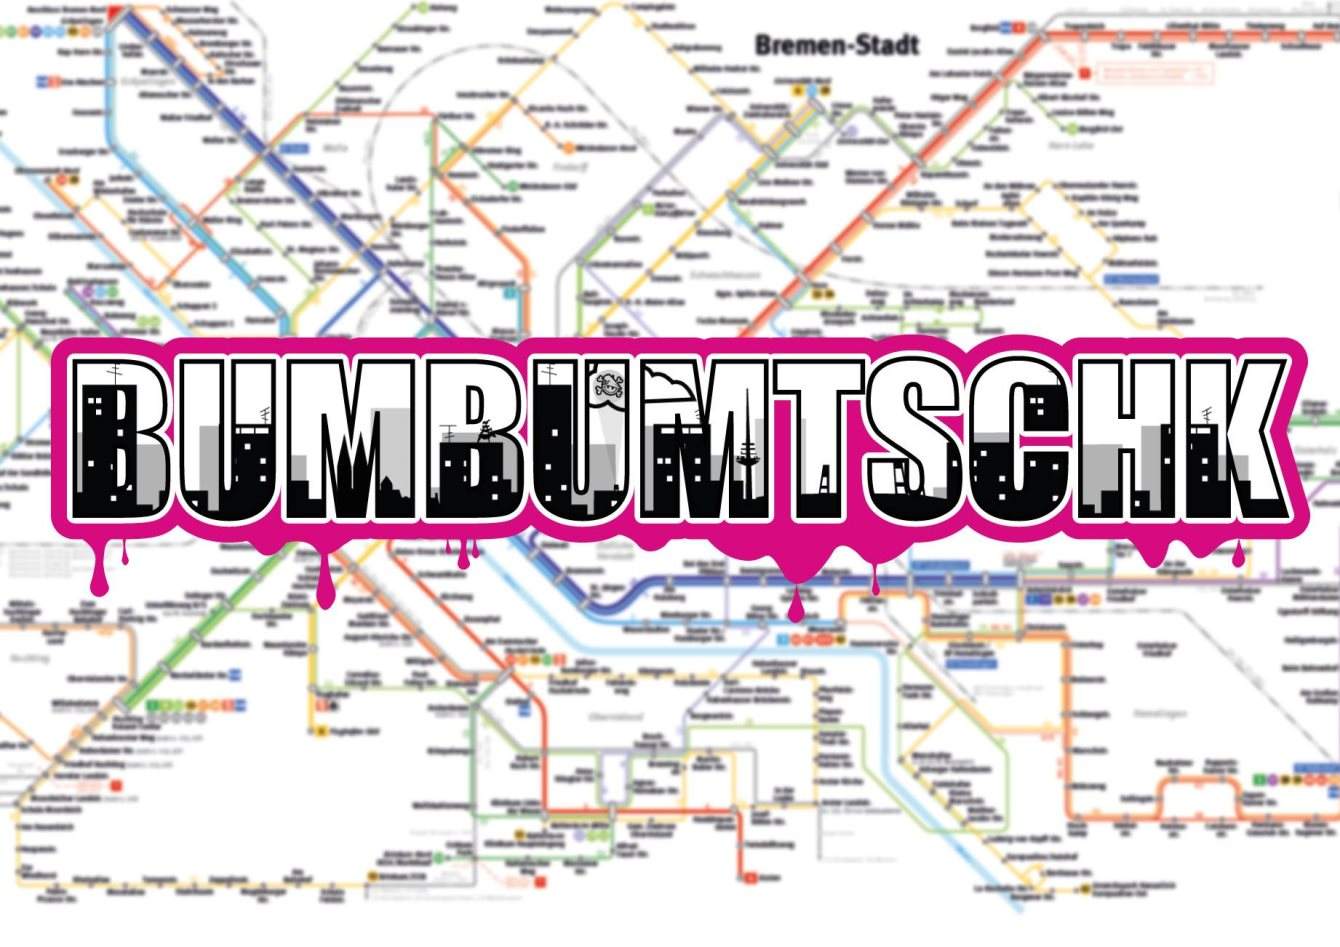 Bumbumtschk - Página frontal